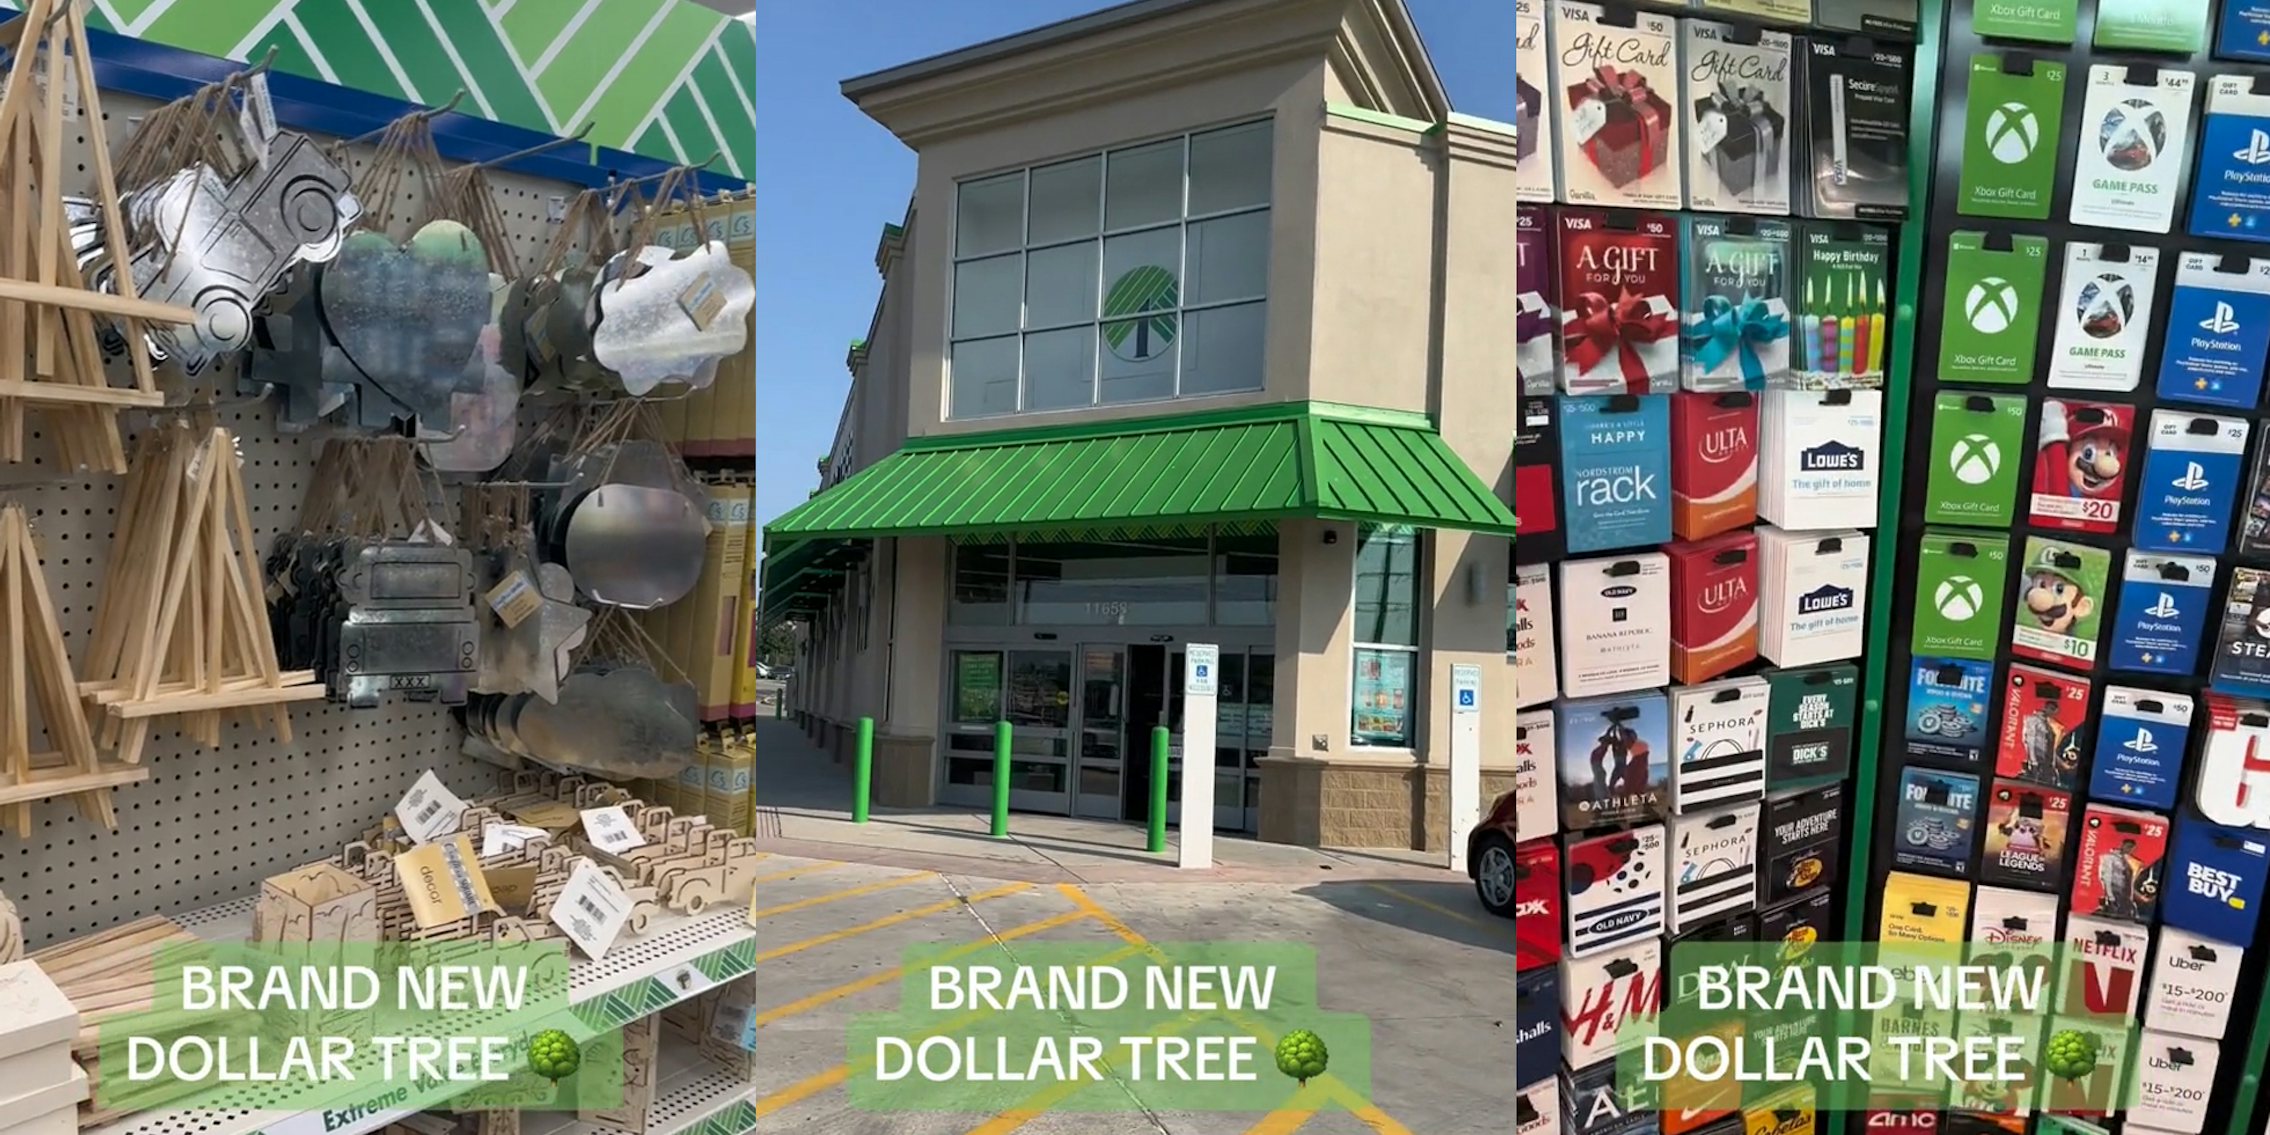 Customer Shows BrandNew WalgreensTurnedDollar Tree